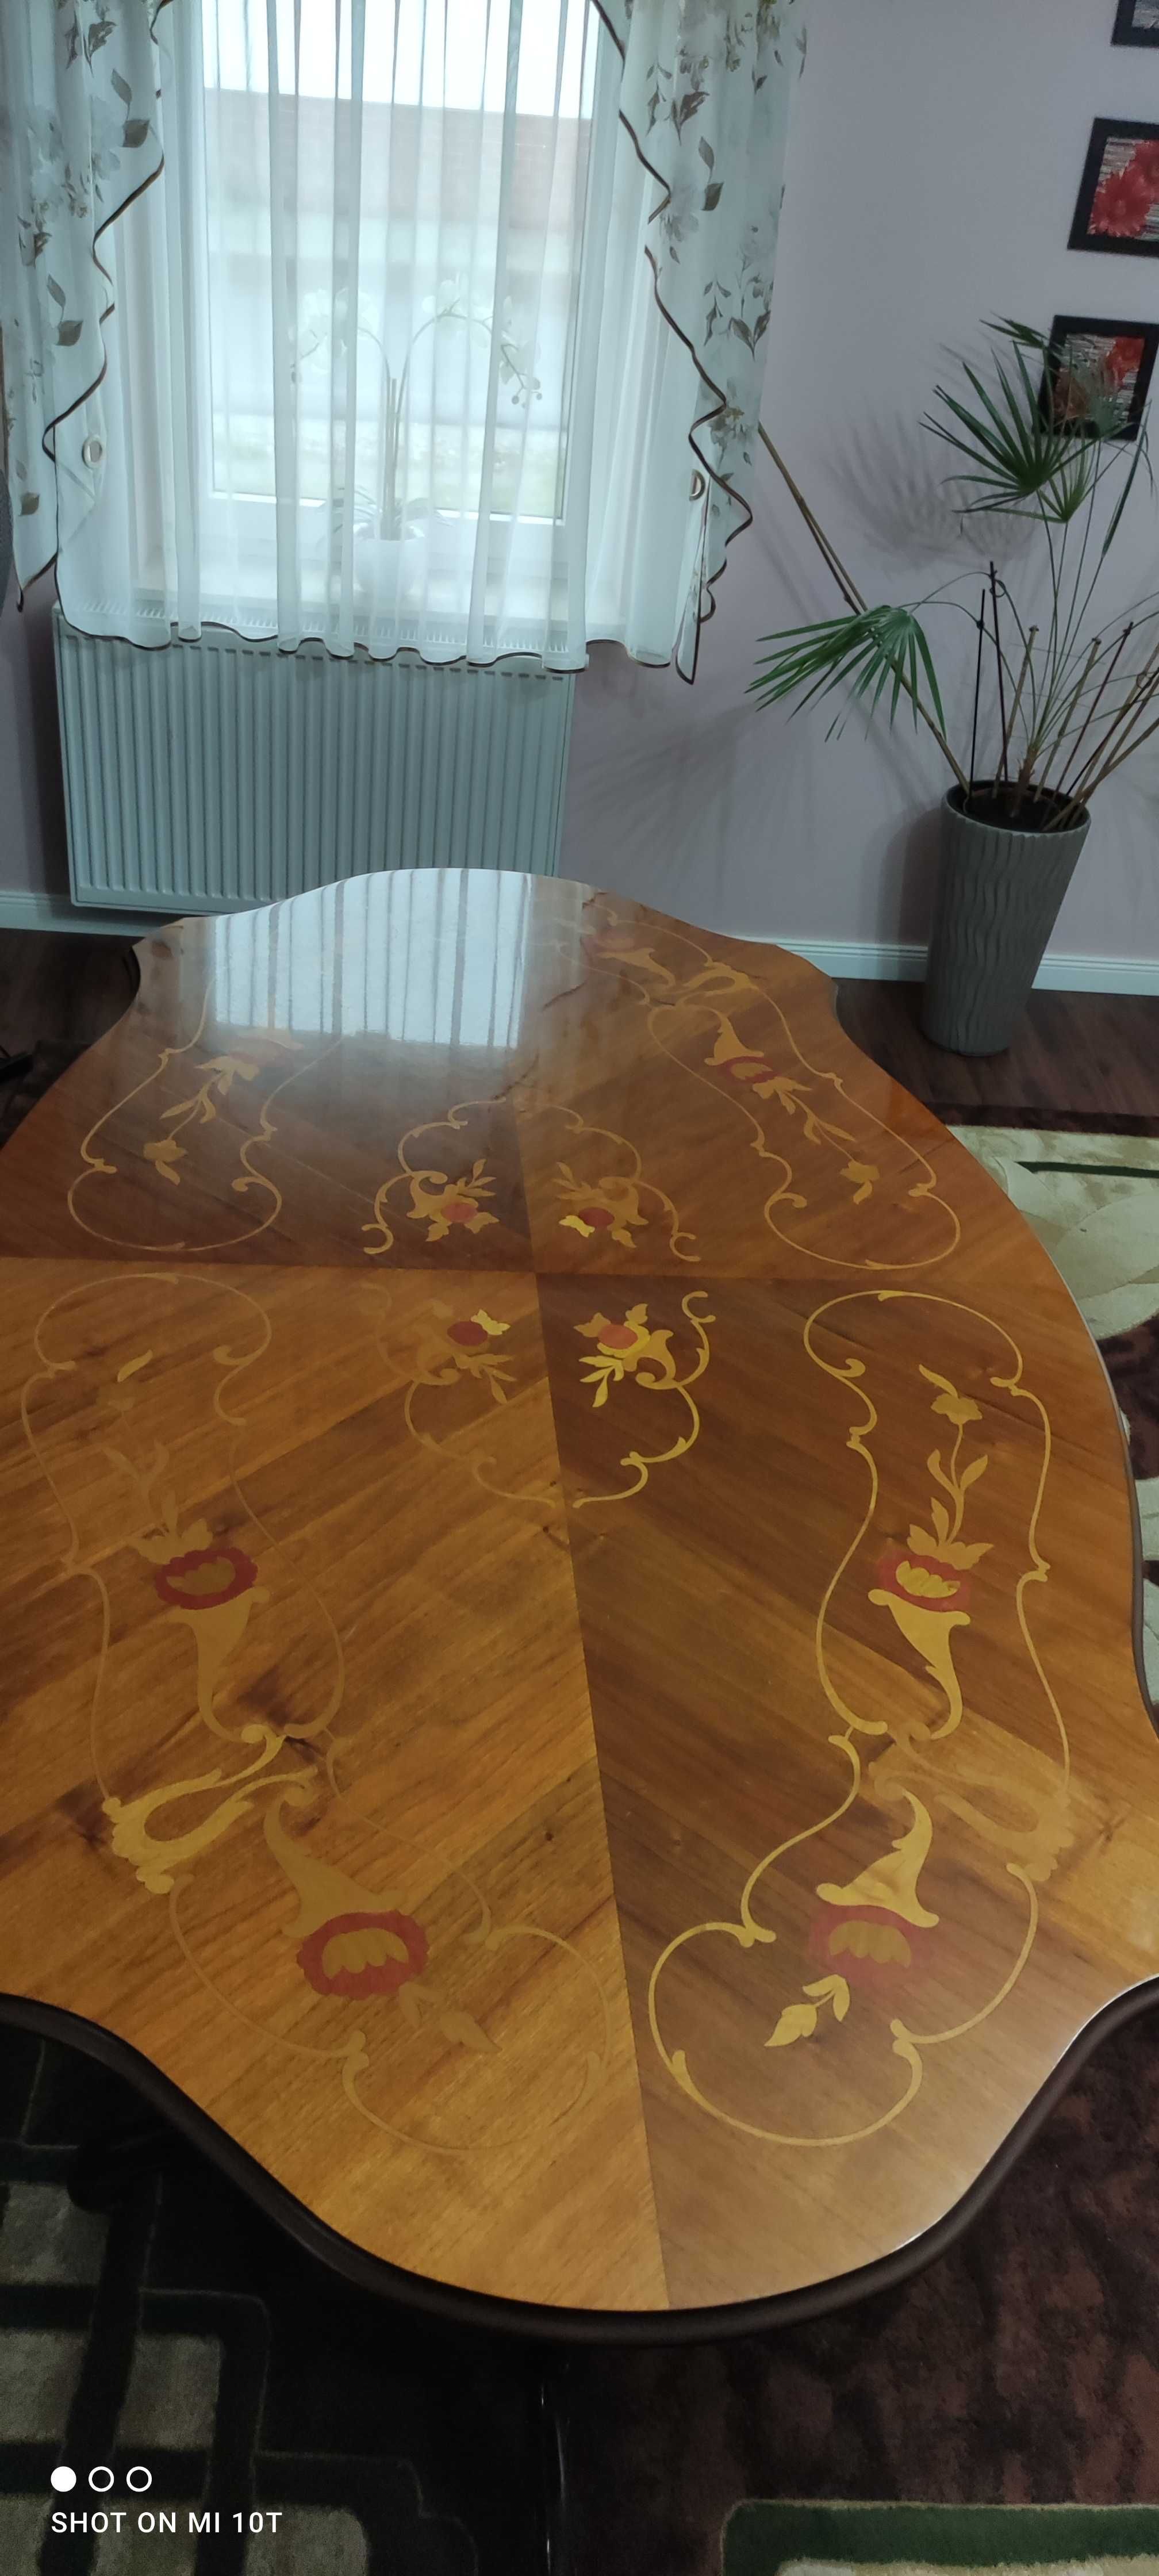 Stół Ludwik Filip, duży stylowy stół włoski